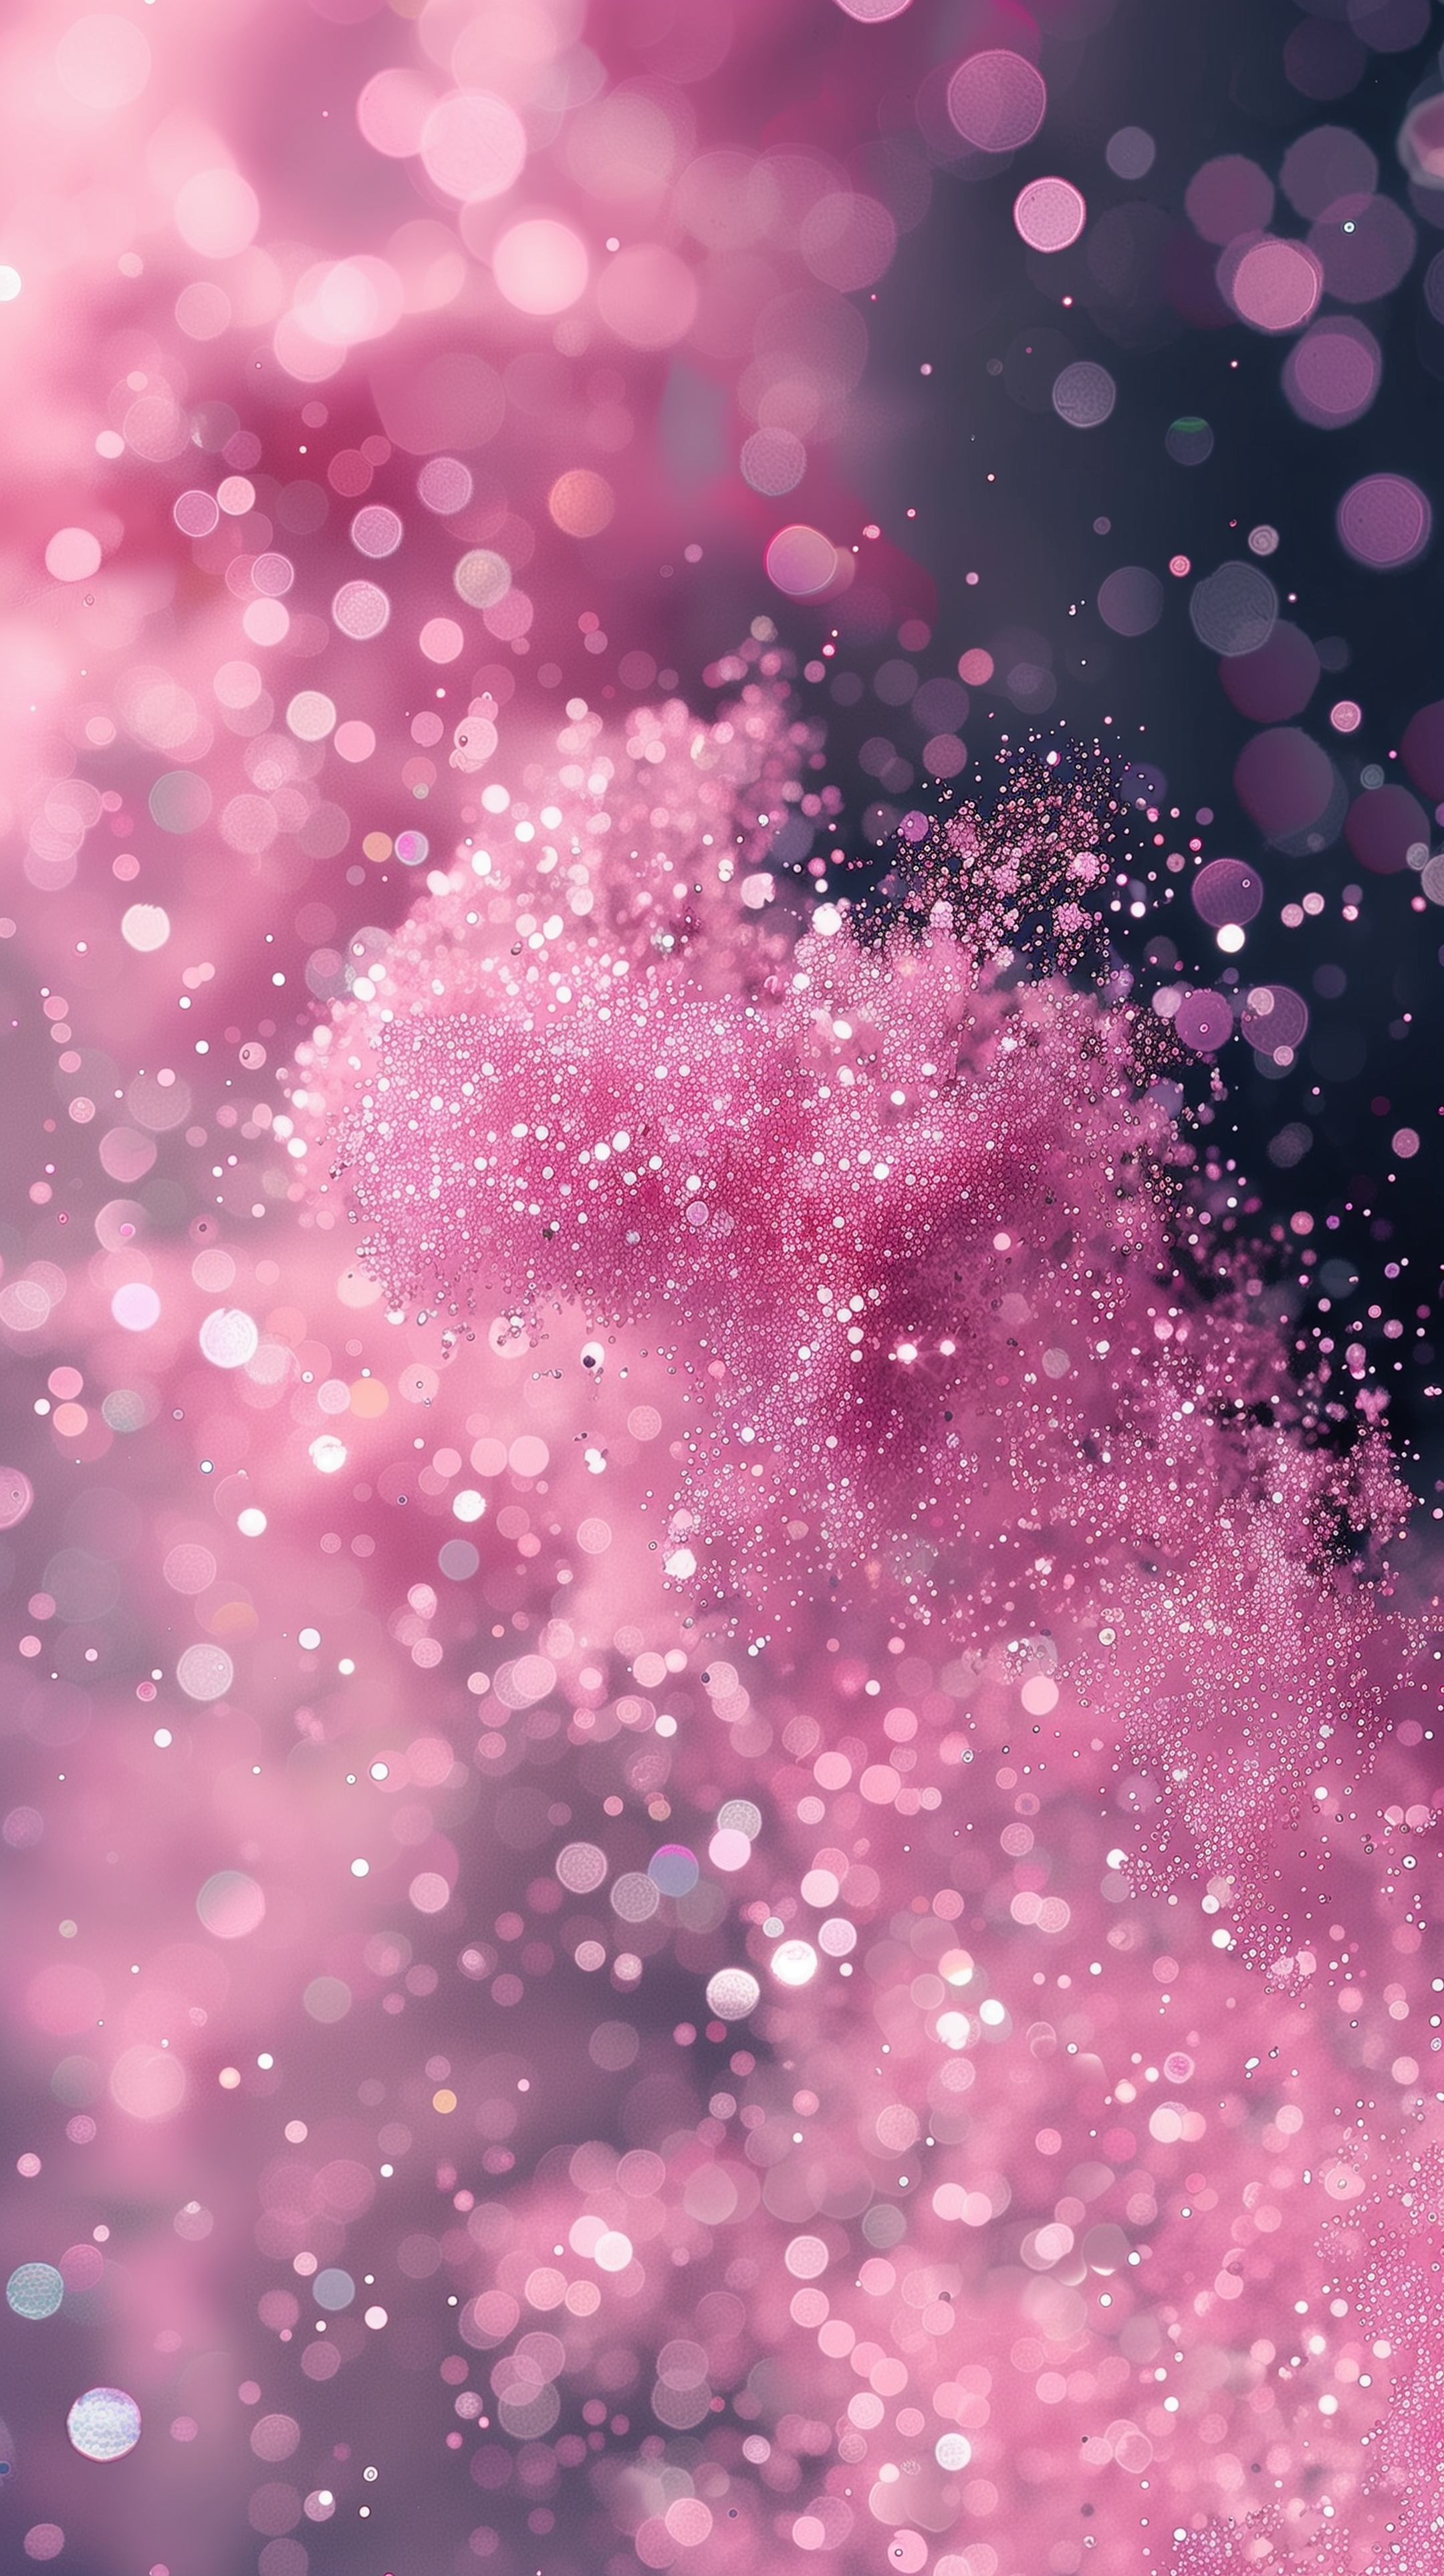 Sparkling Pink Glitter Magic Tapeta na zeď[74acc00f2dee4a9fb02f]